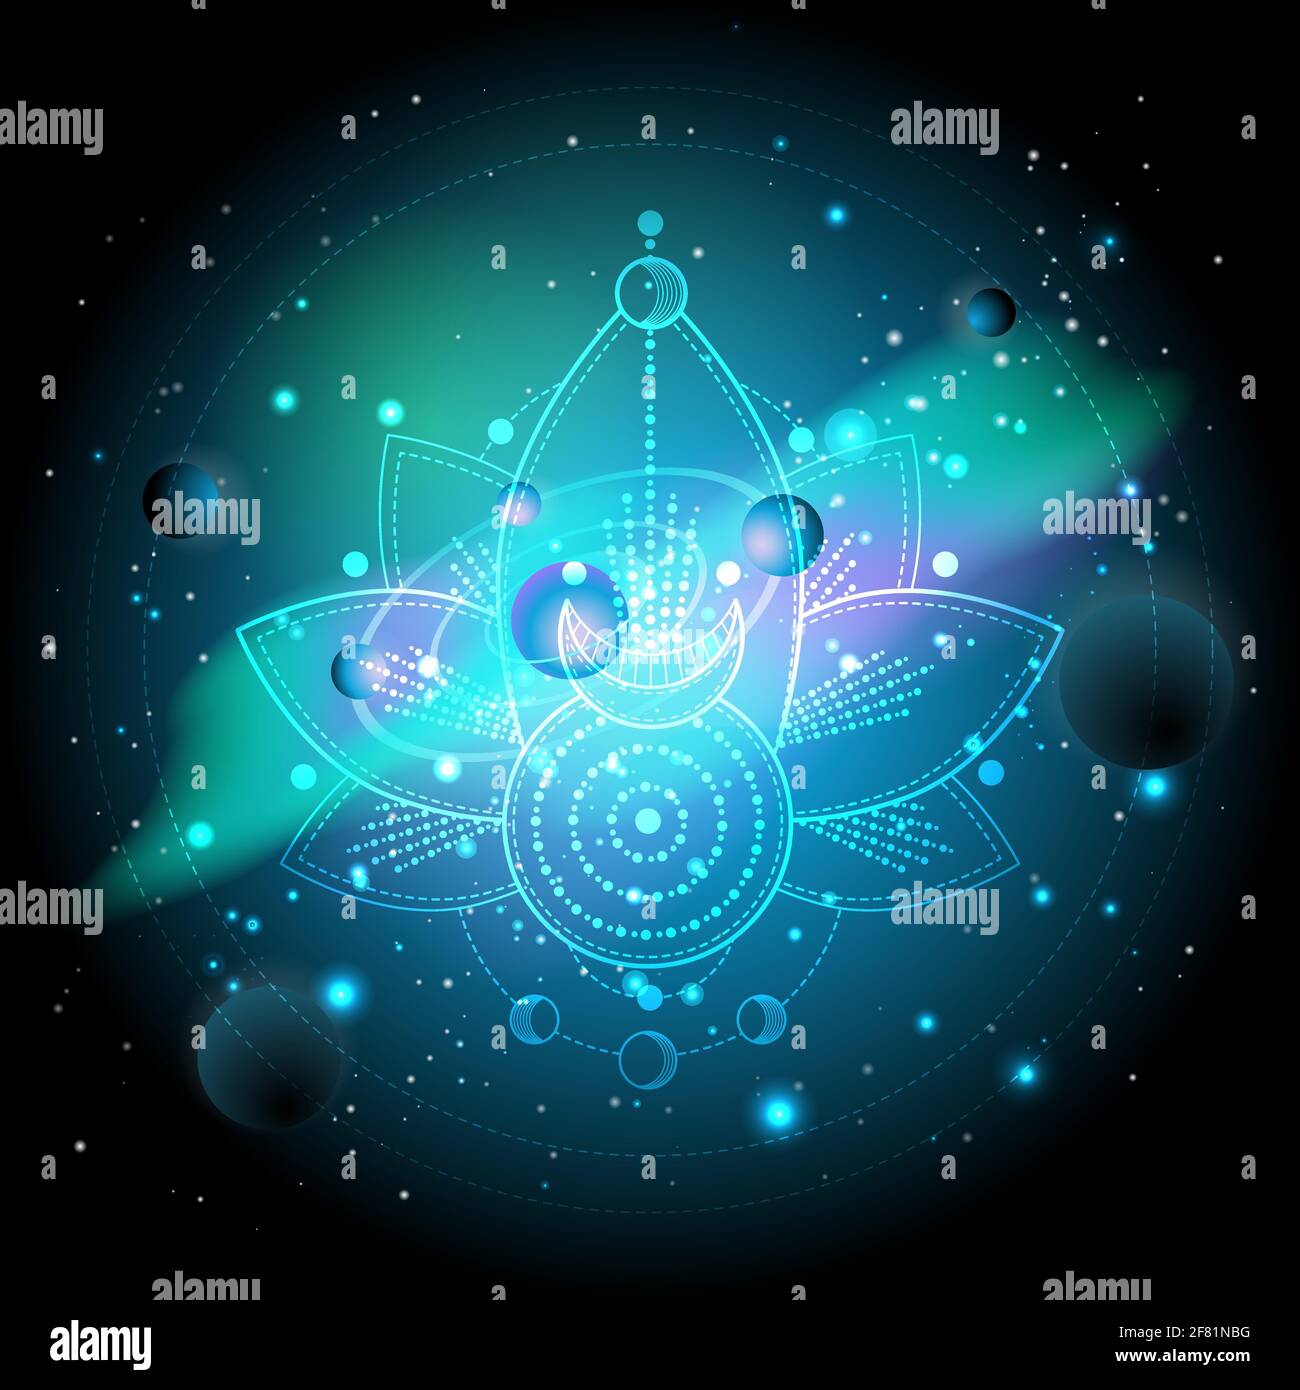 Illustration vectorielle du symbole sacré ou mystique sur fond d'espace avec des planètes et des étoiles. Signes géométriques abstraits tracés en lignes. Multicolo Illustration de Vecteur